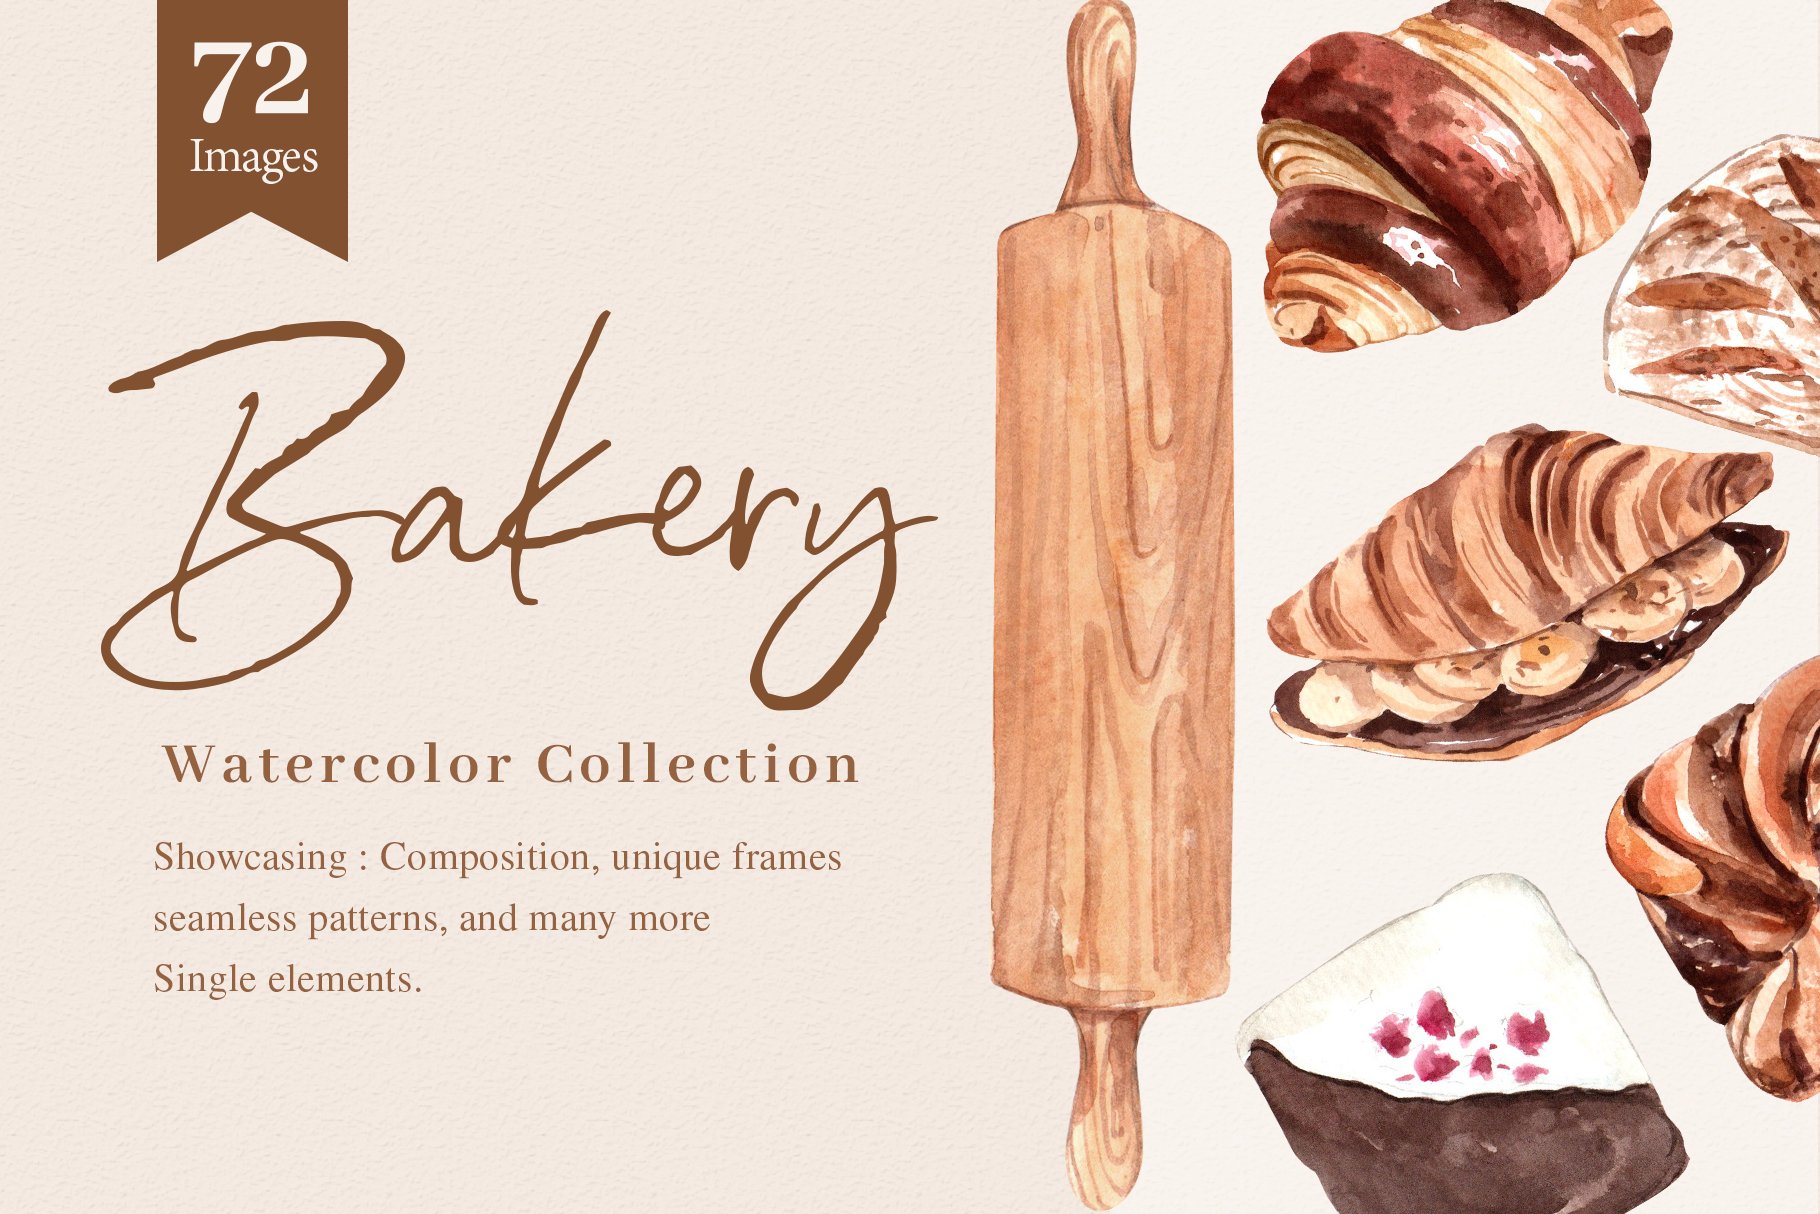 Bakery Bake Homemade Watercolor illustration